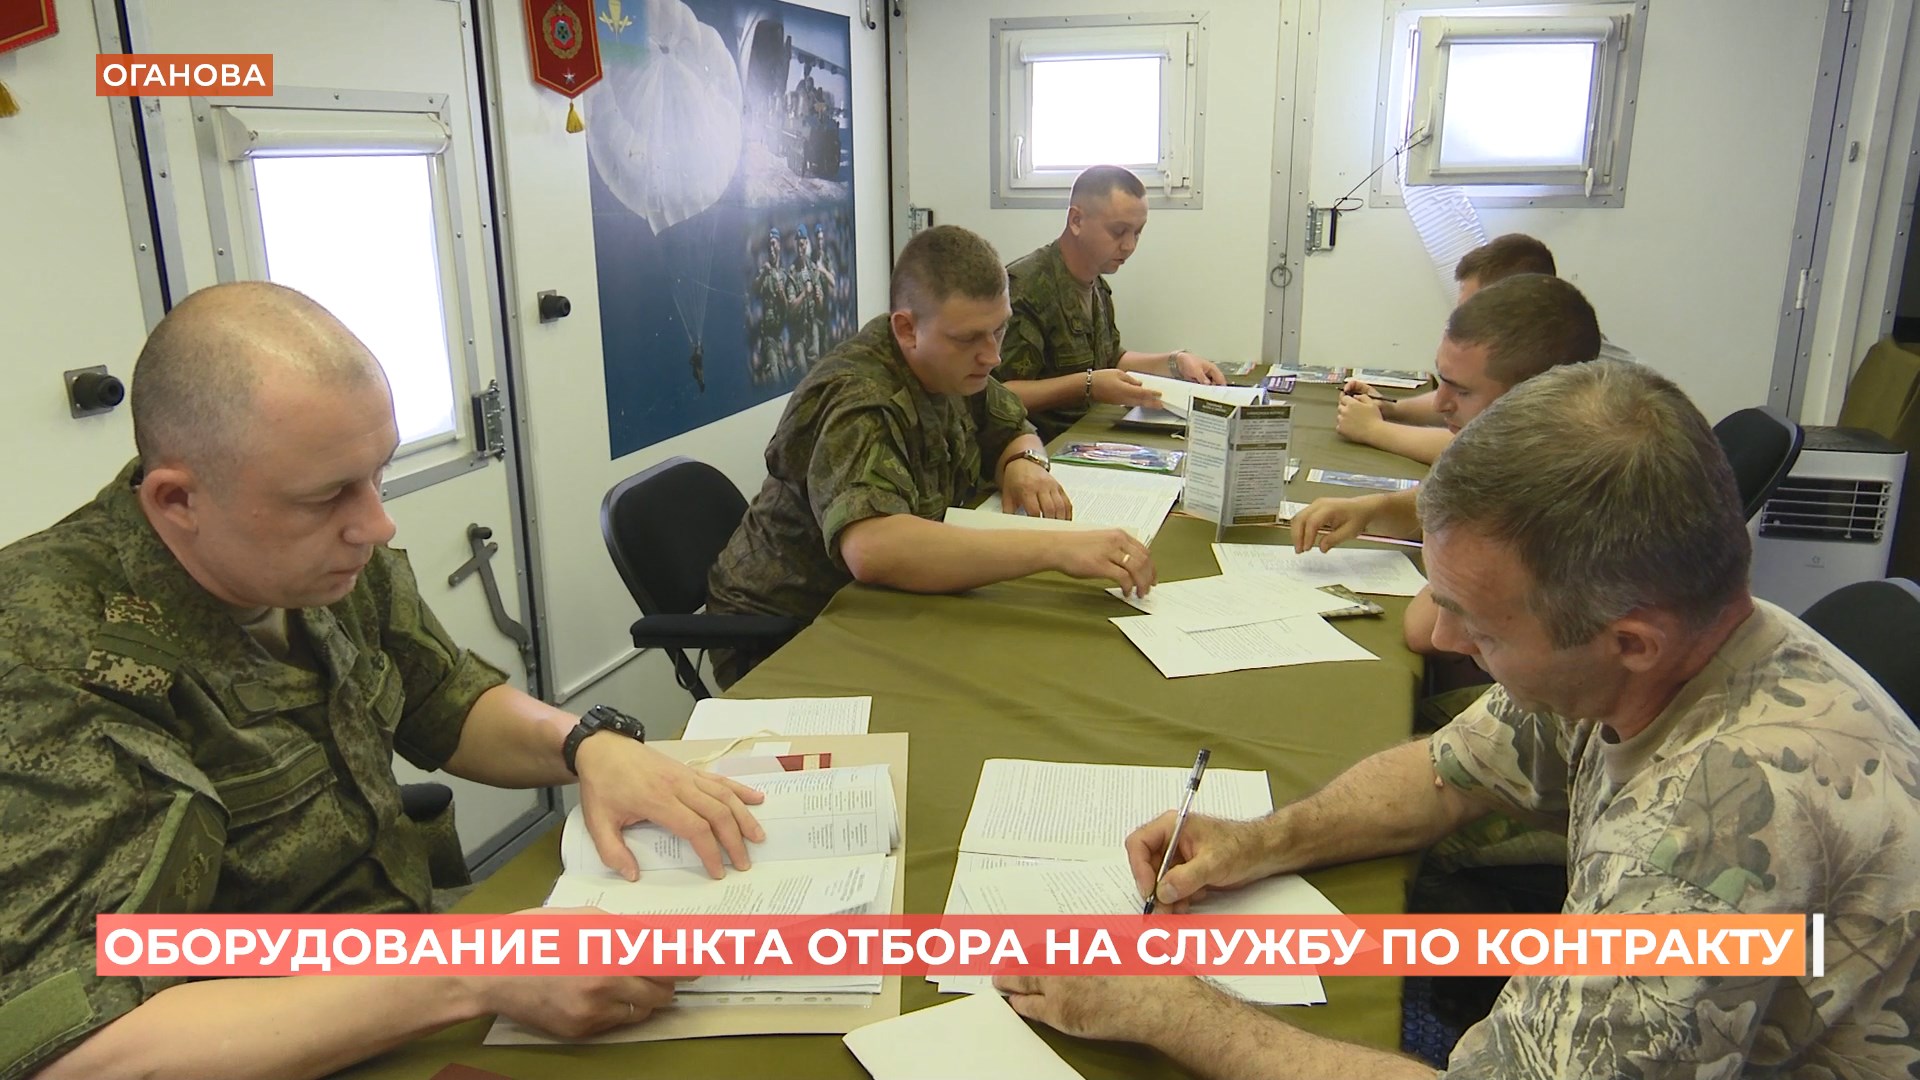 Новое оборудование от областного правительства получил ростовский пункт отбора на военную службу по контракту